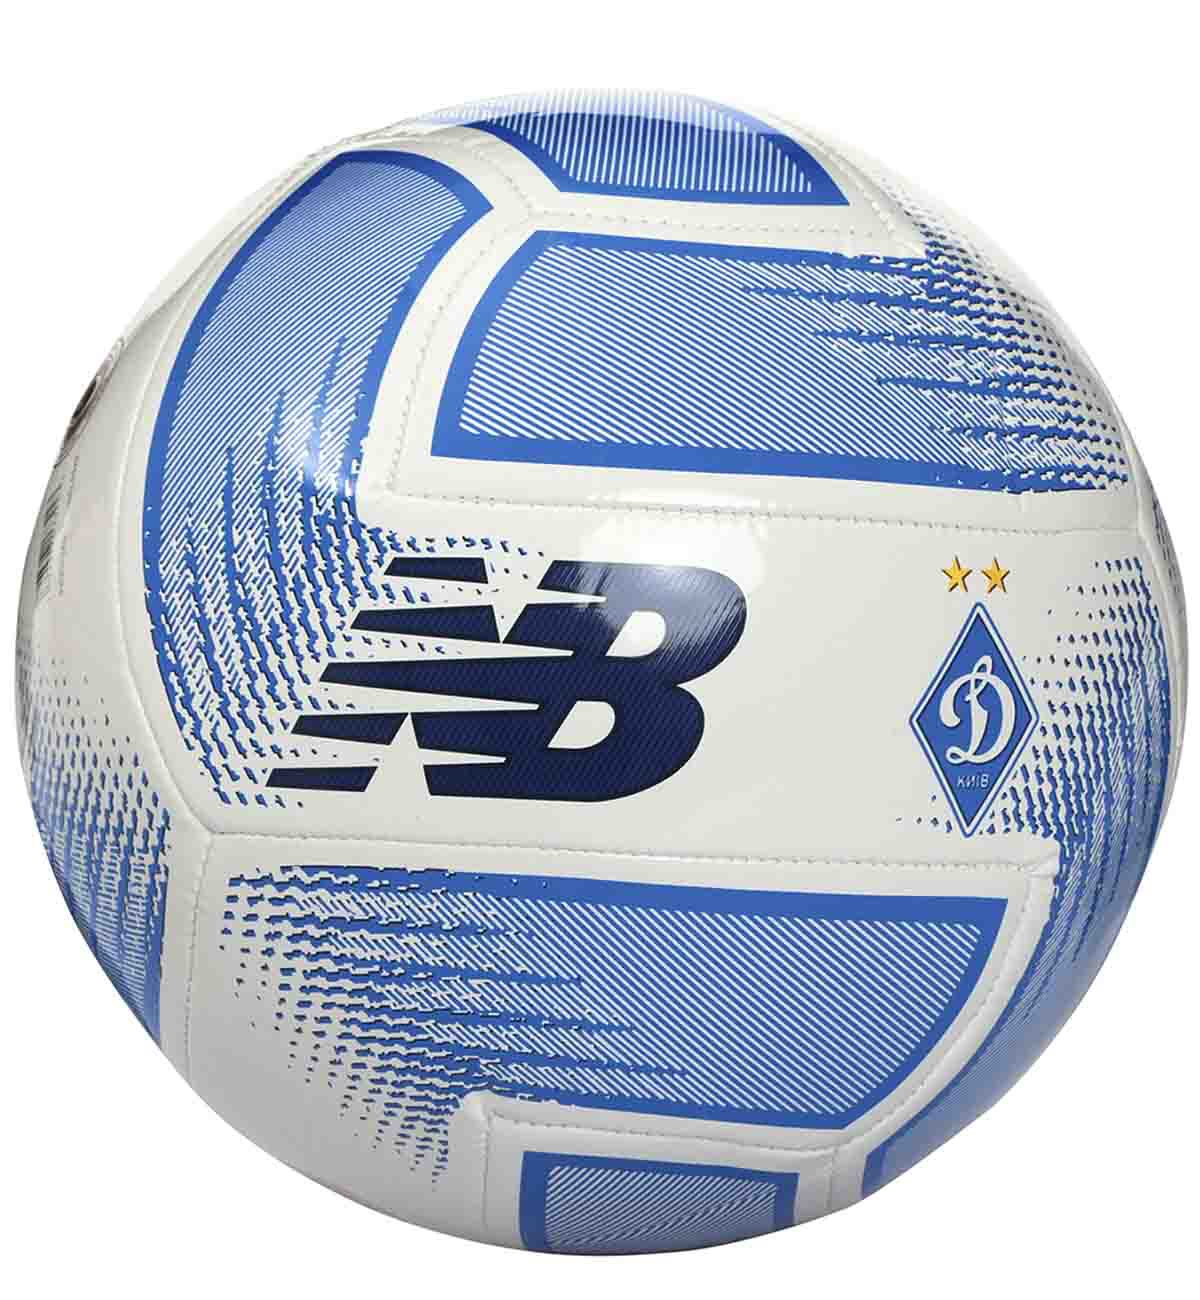 FCDK white/blue soccer ball (size 3)